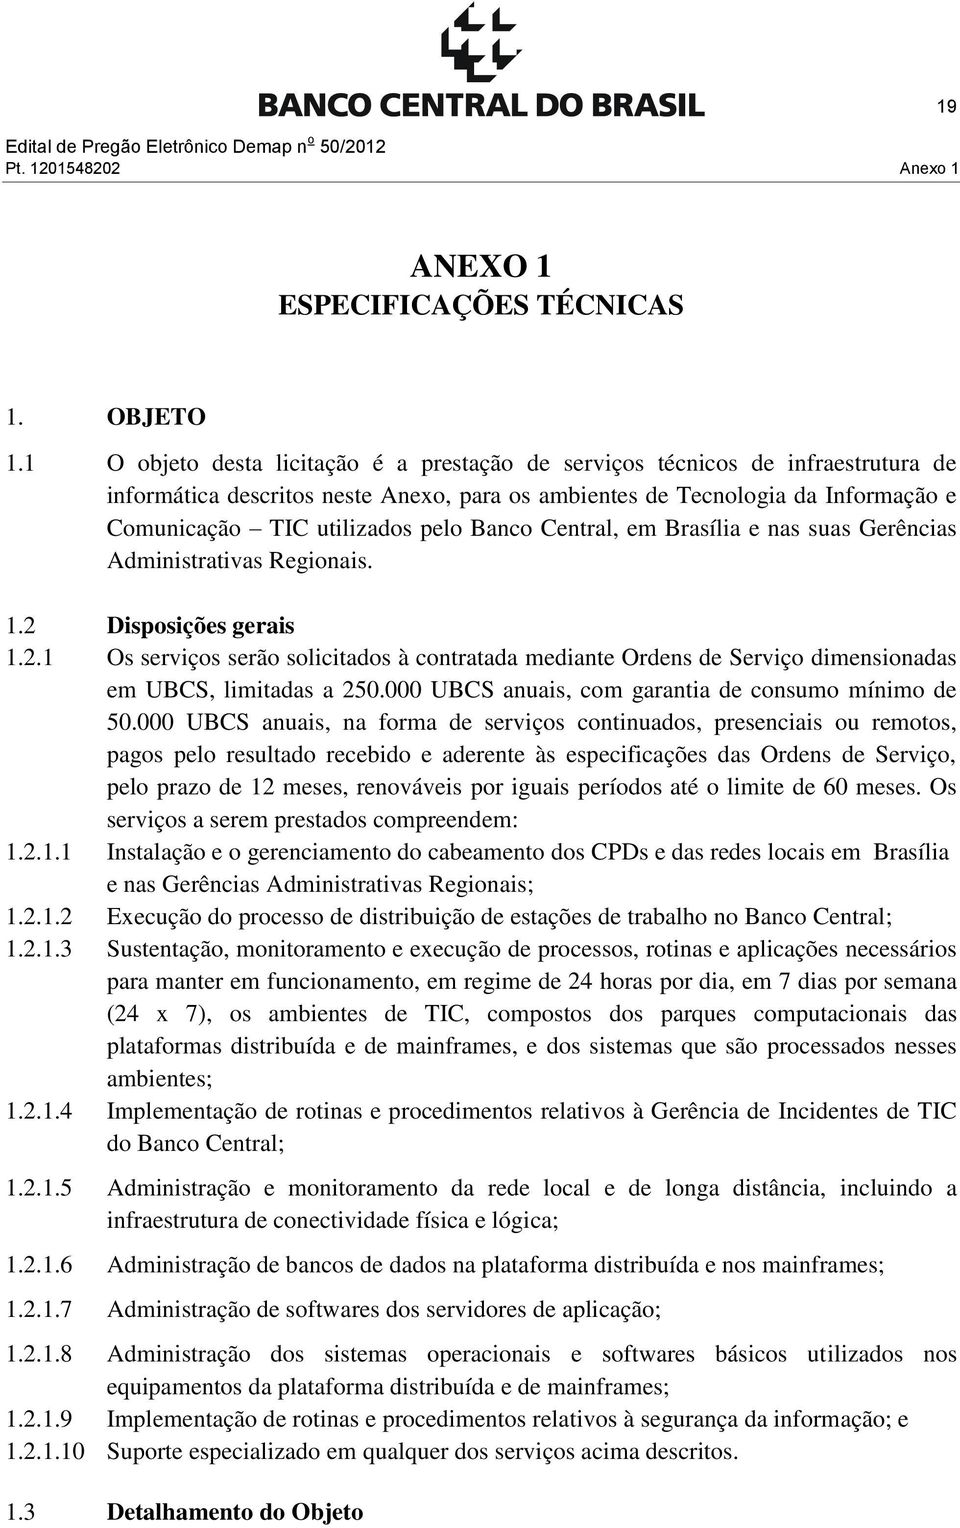 Banco Central, em Brasília e nas suas Gerências Administrativas Regionais. 1.2 Disposições gerais 1.2.1 Os serviços serão solicitados à contratada mediante Ordens de Serviço dimensionadas em UBCS, limitadas a 250.